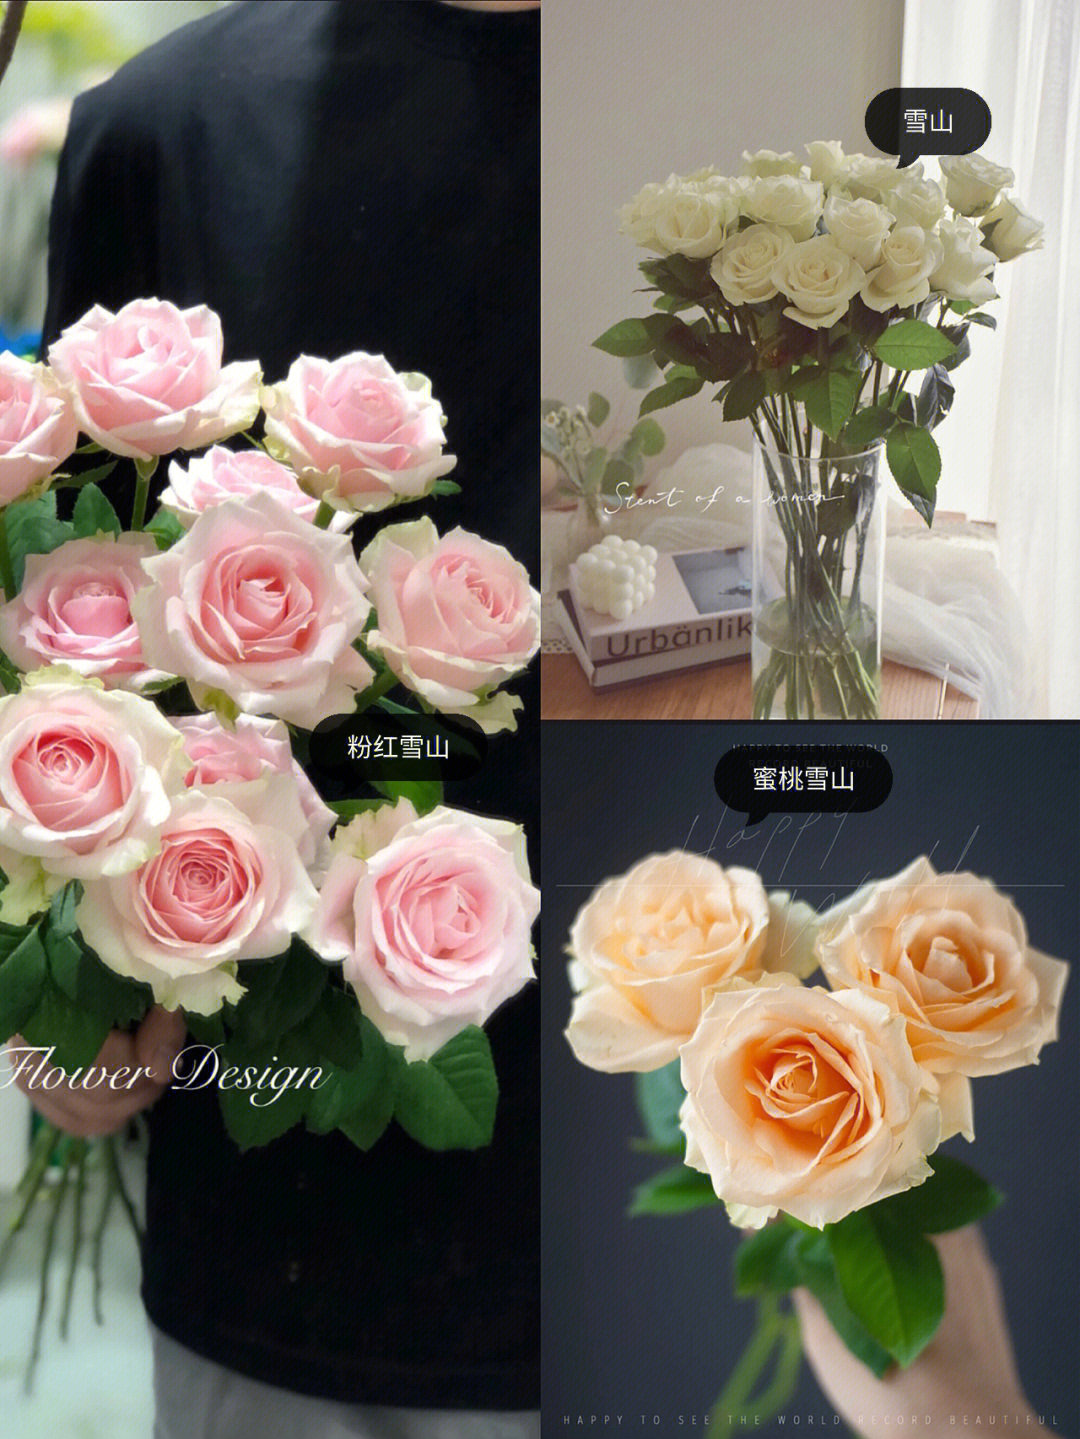 玫瑰品种大概有十一种,分别是粉雪山,白雪山,蜜桃雪山,甜心雪山,桃红